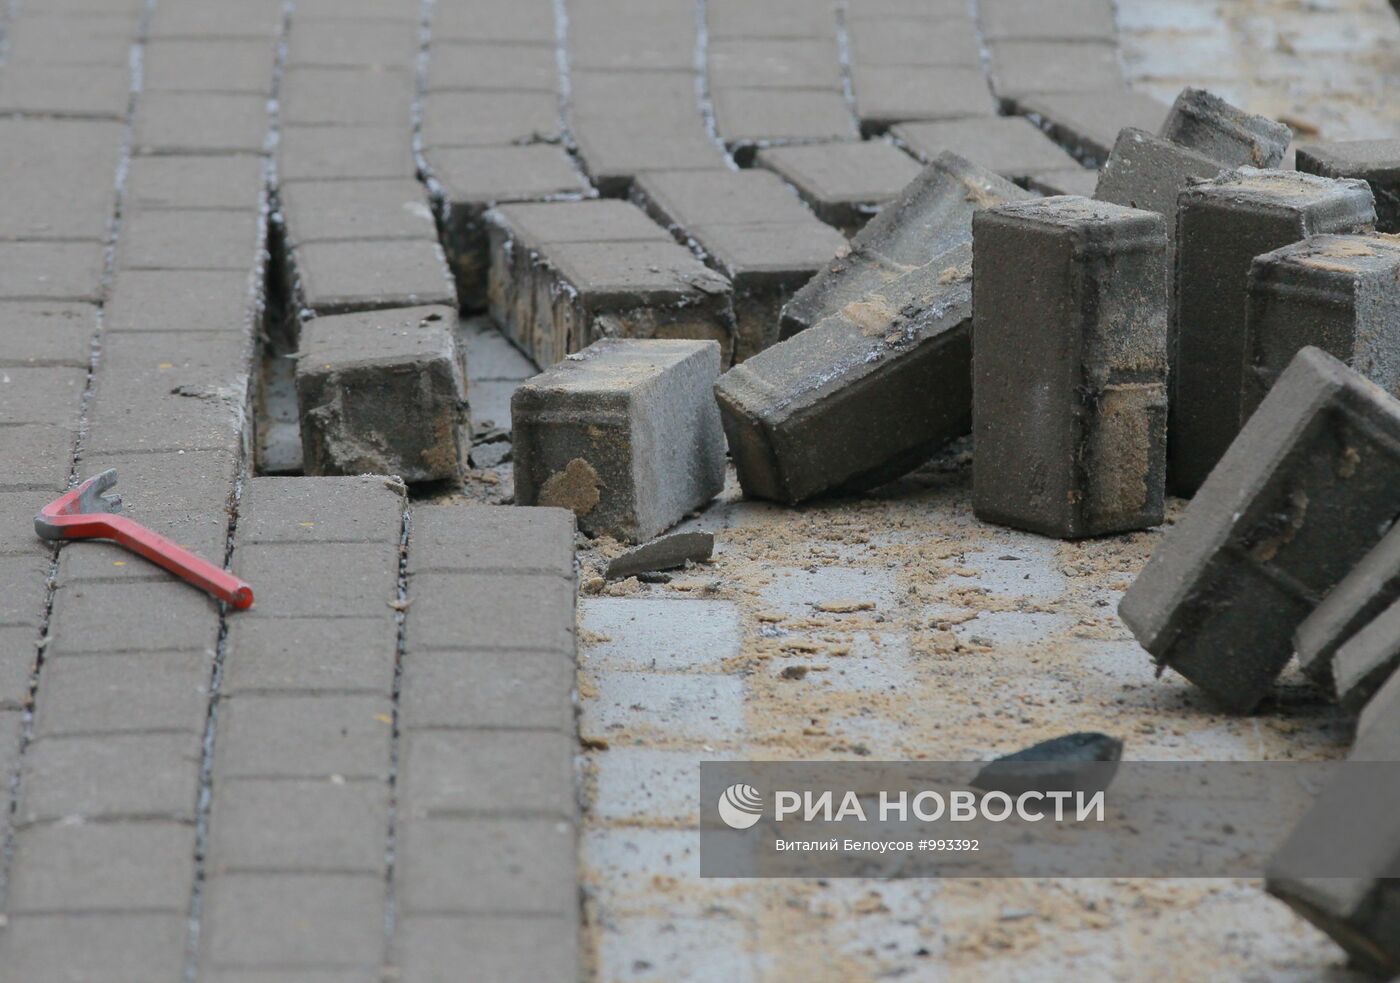 Замена тротуарной плитки в районе станции метро "Таганская"